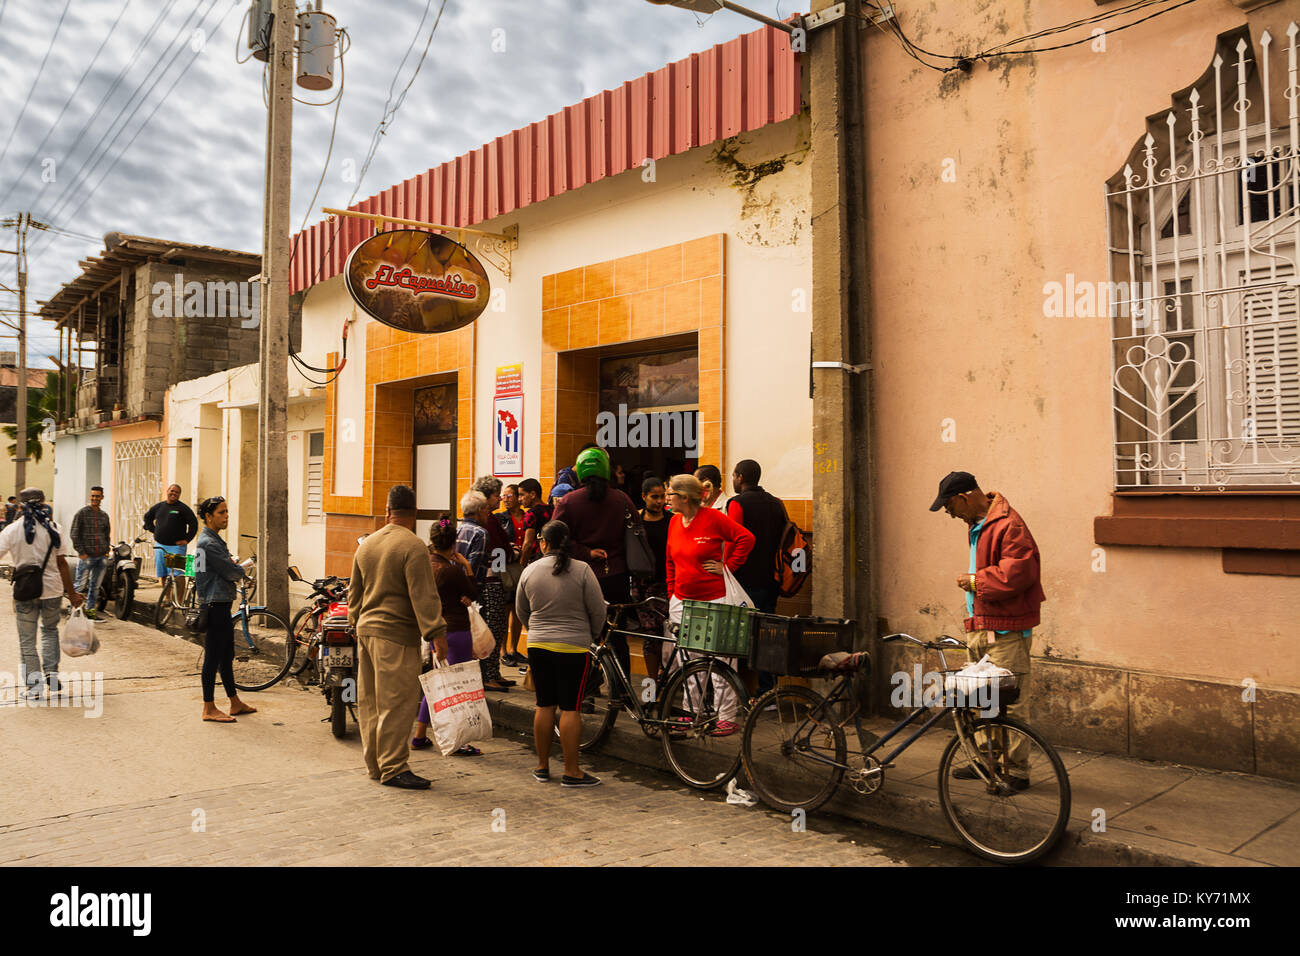 Santa Clara, Cuba - 10 dcember 2017: il popolo cubano in attesa al di fuori dei bar per acquistare un cappuccino Foto Stock